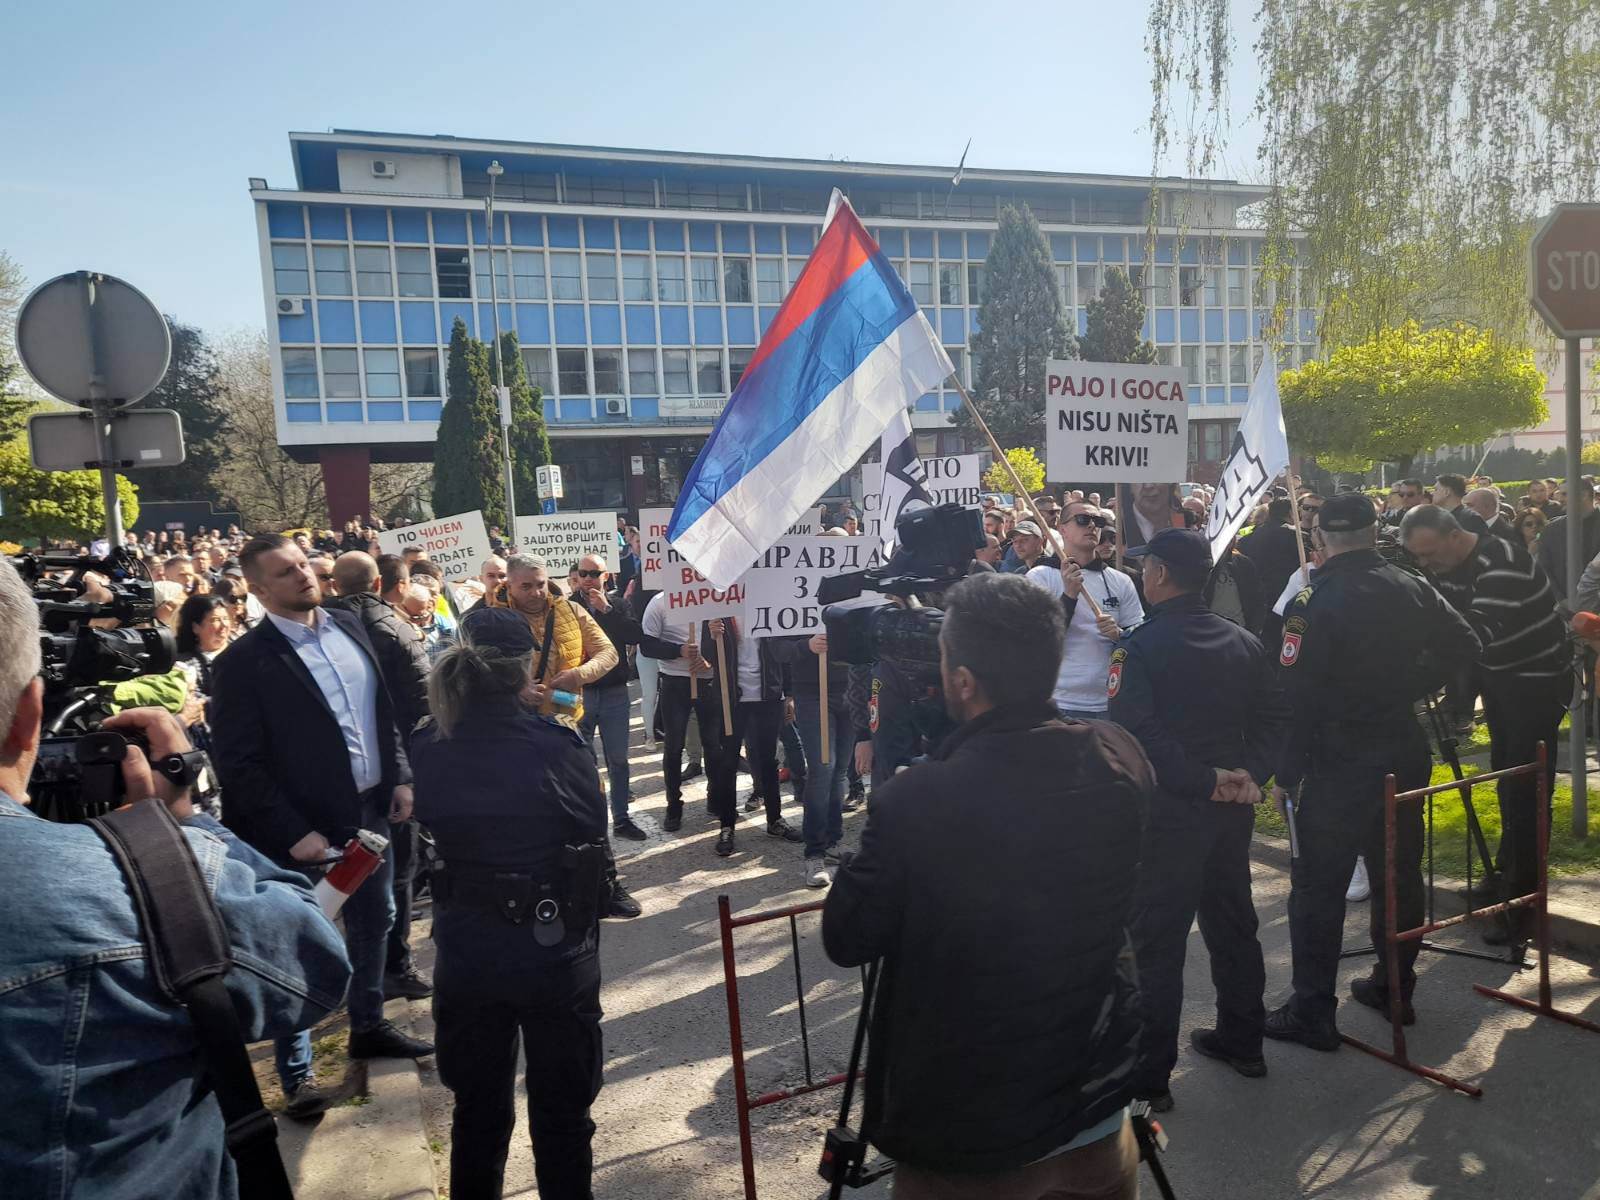  Tužilaštvo u Doboju optužilo više od 400 osoba zbog izborne krađe 